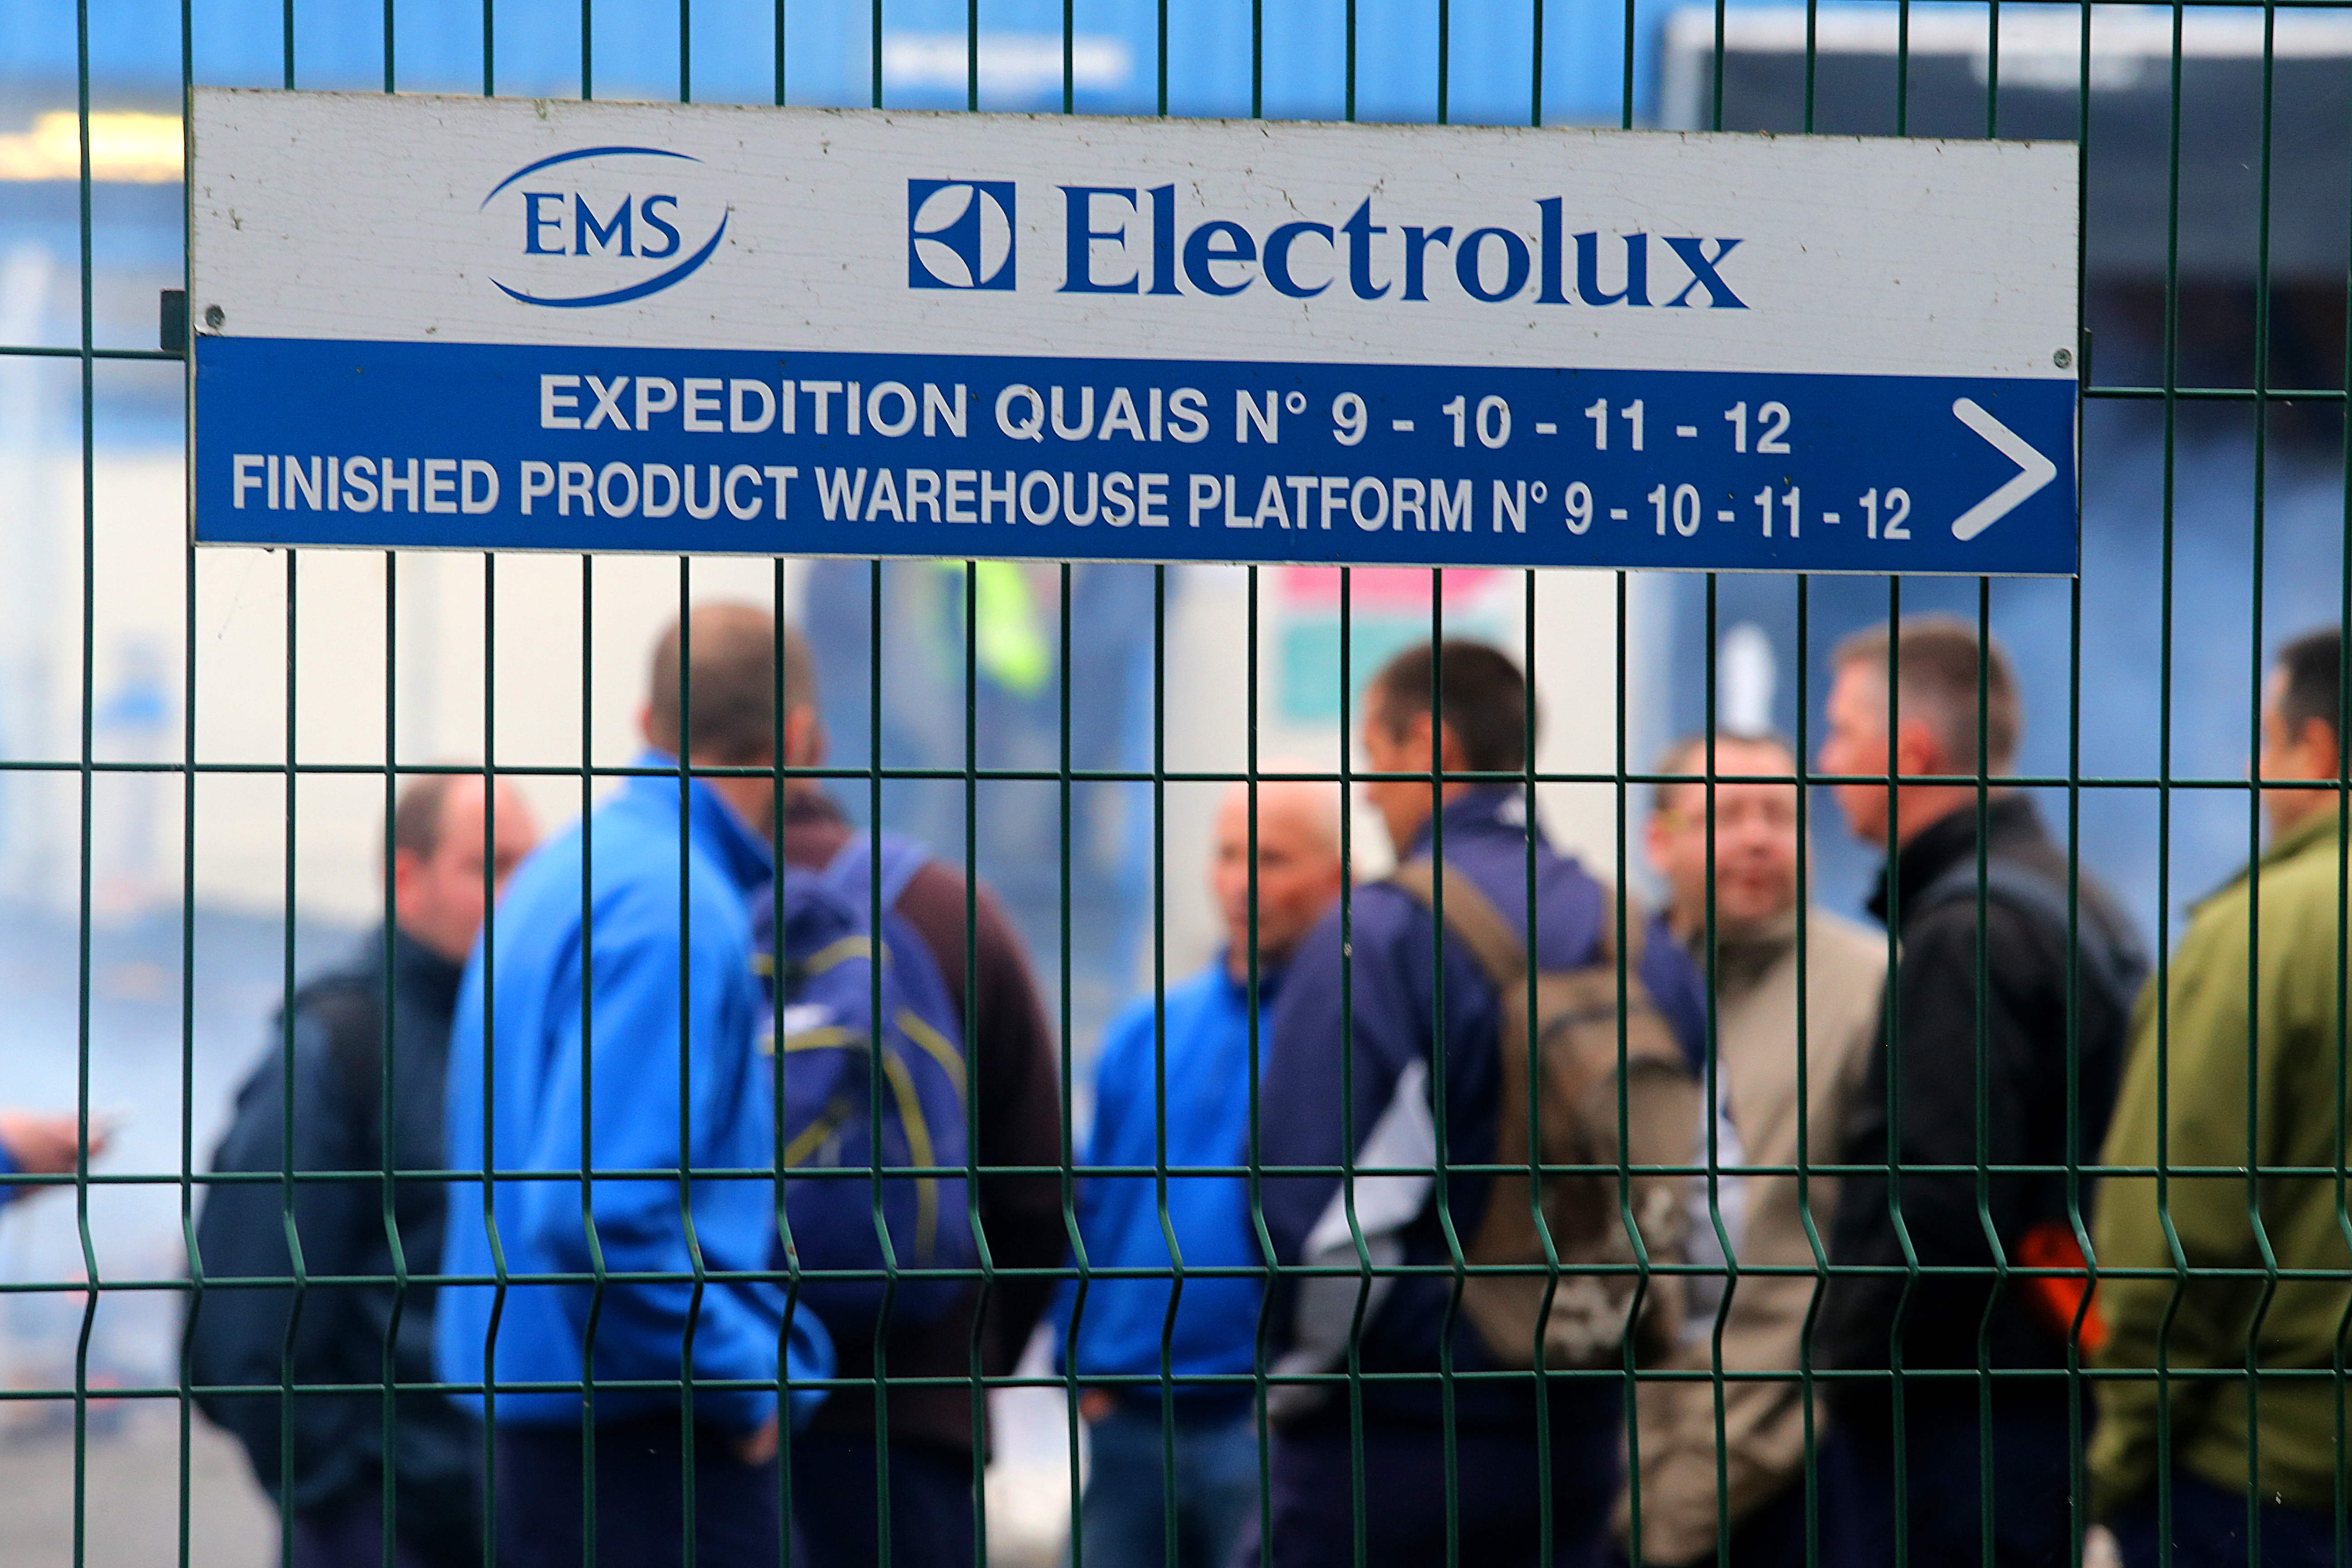 Leállt a termelés az Electrolux jászberényi fagyasztóláda üzemében